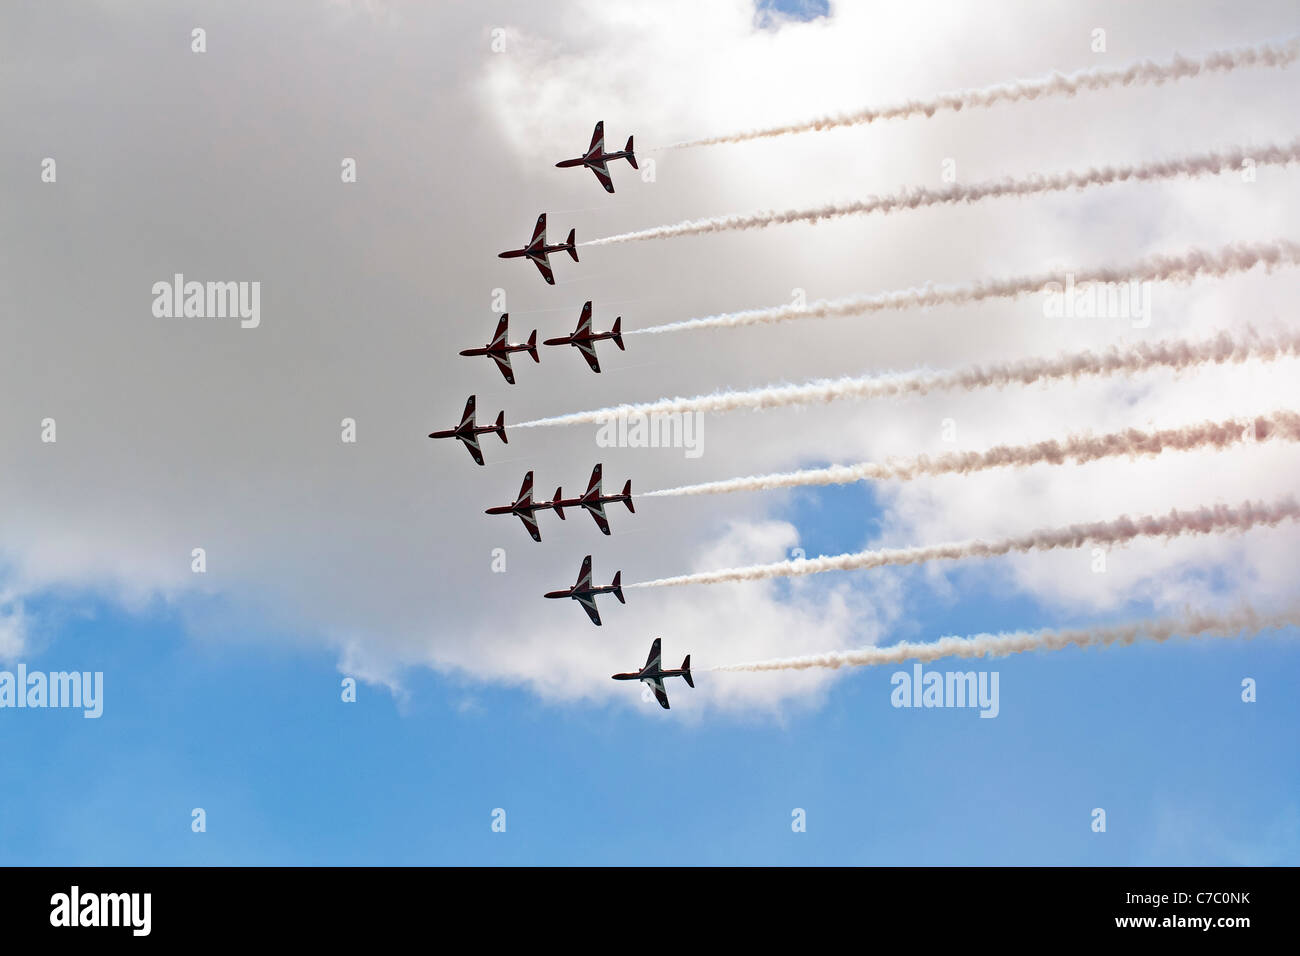 Die Royal Air Force Kunstflugstaffel, die Red Arrows in Swansea Meer anzeigen anzeigen Ereignis Stockfoto